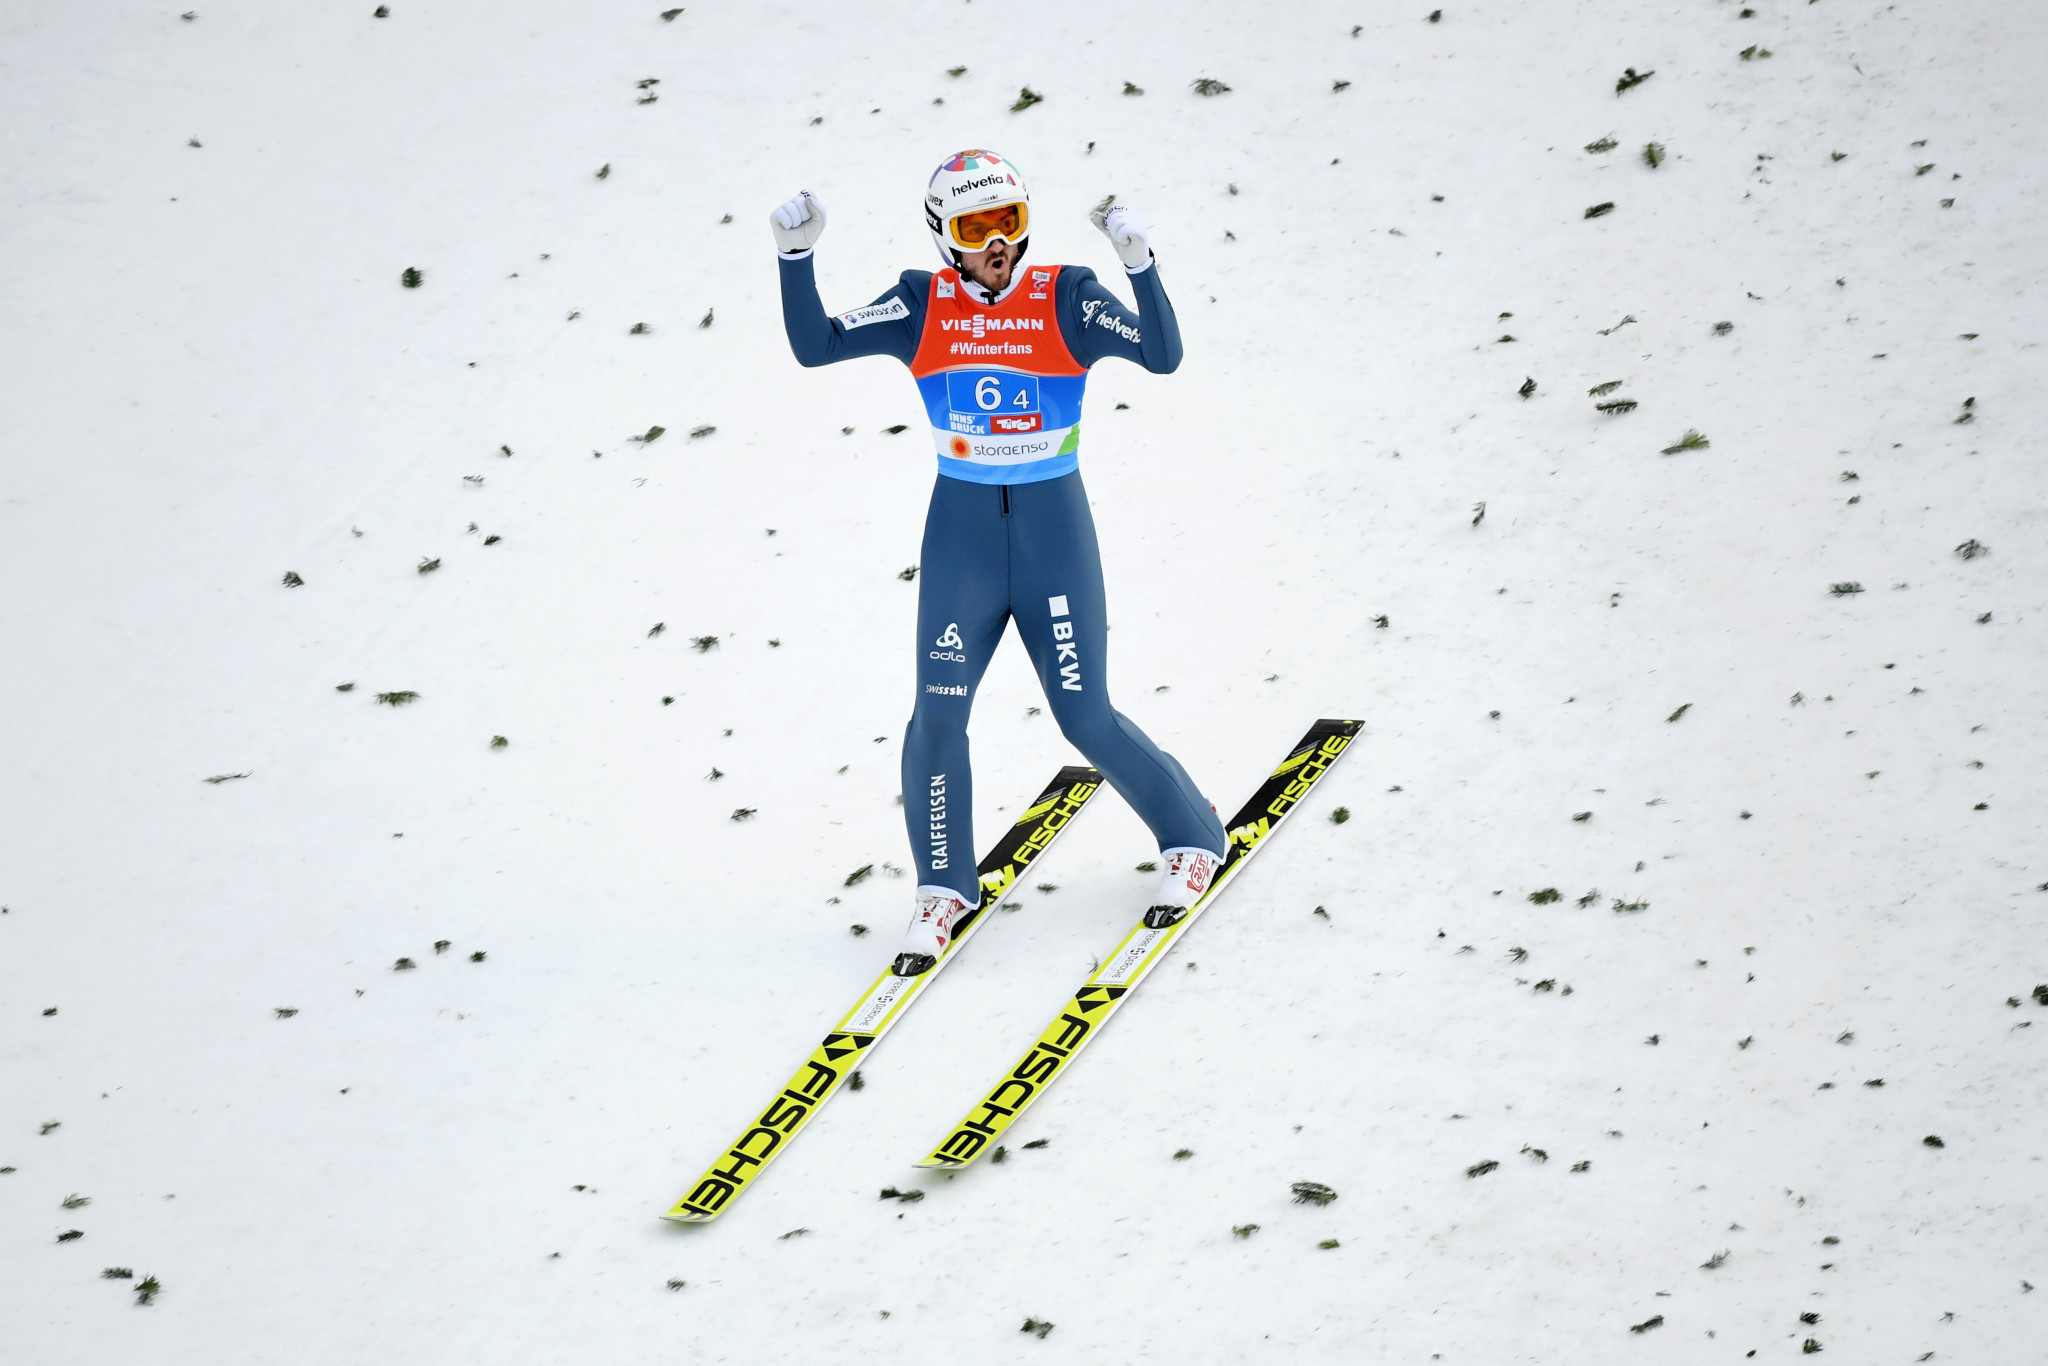 World ski jumping medallist Peier named latest Lausanne 2020 ambassador